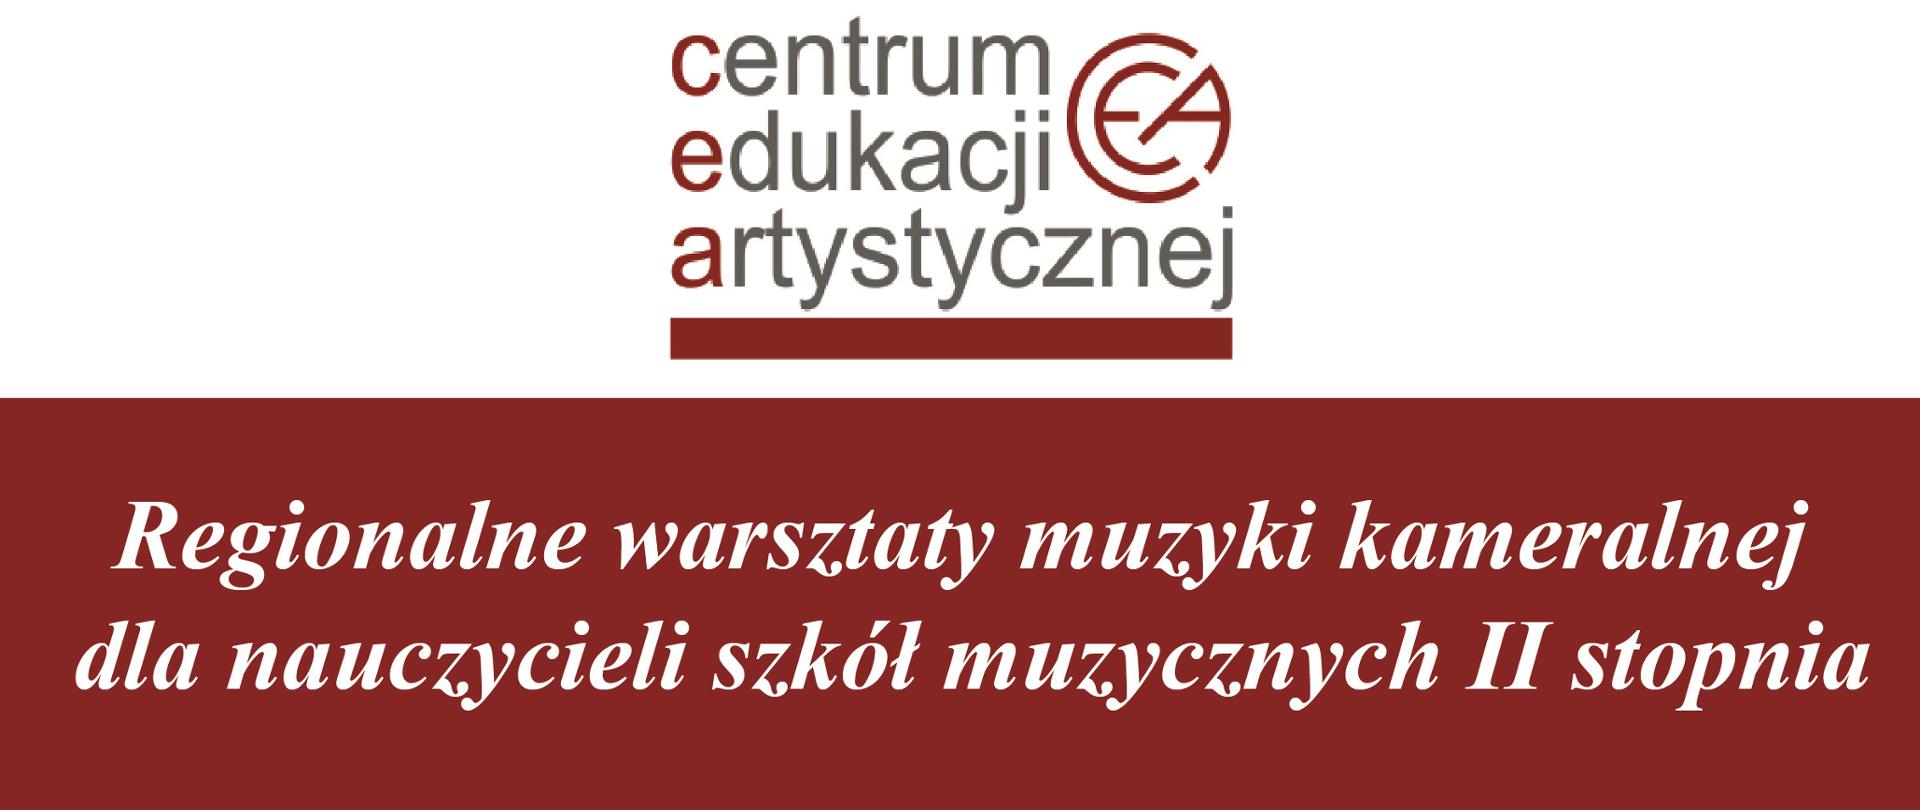 Na białym tle na górze logo Centrum Edukacji Artystycznej w Warszawie, poniżej informacja o odbywających się w dniach 23-24 listopada Regionalnych Warsztatach dla Nauczycieli z muzyki kameralnej. zgłoszenia do 16 listopada przyjmujemy na mail dyrektor@szkolamuzyczna.bydgoszcz.pl